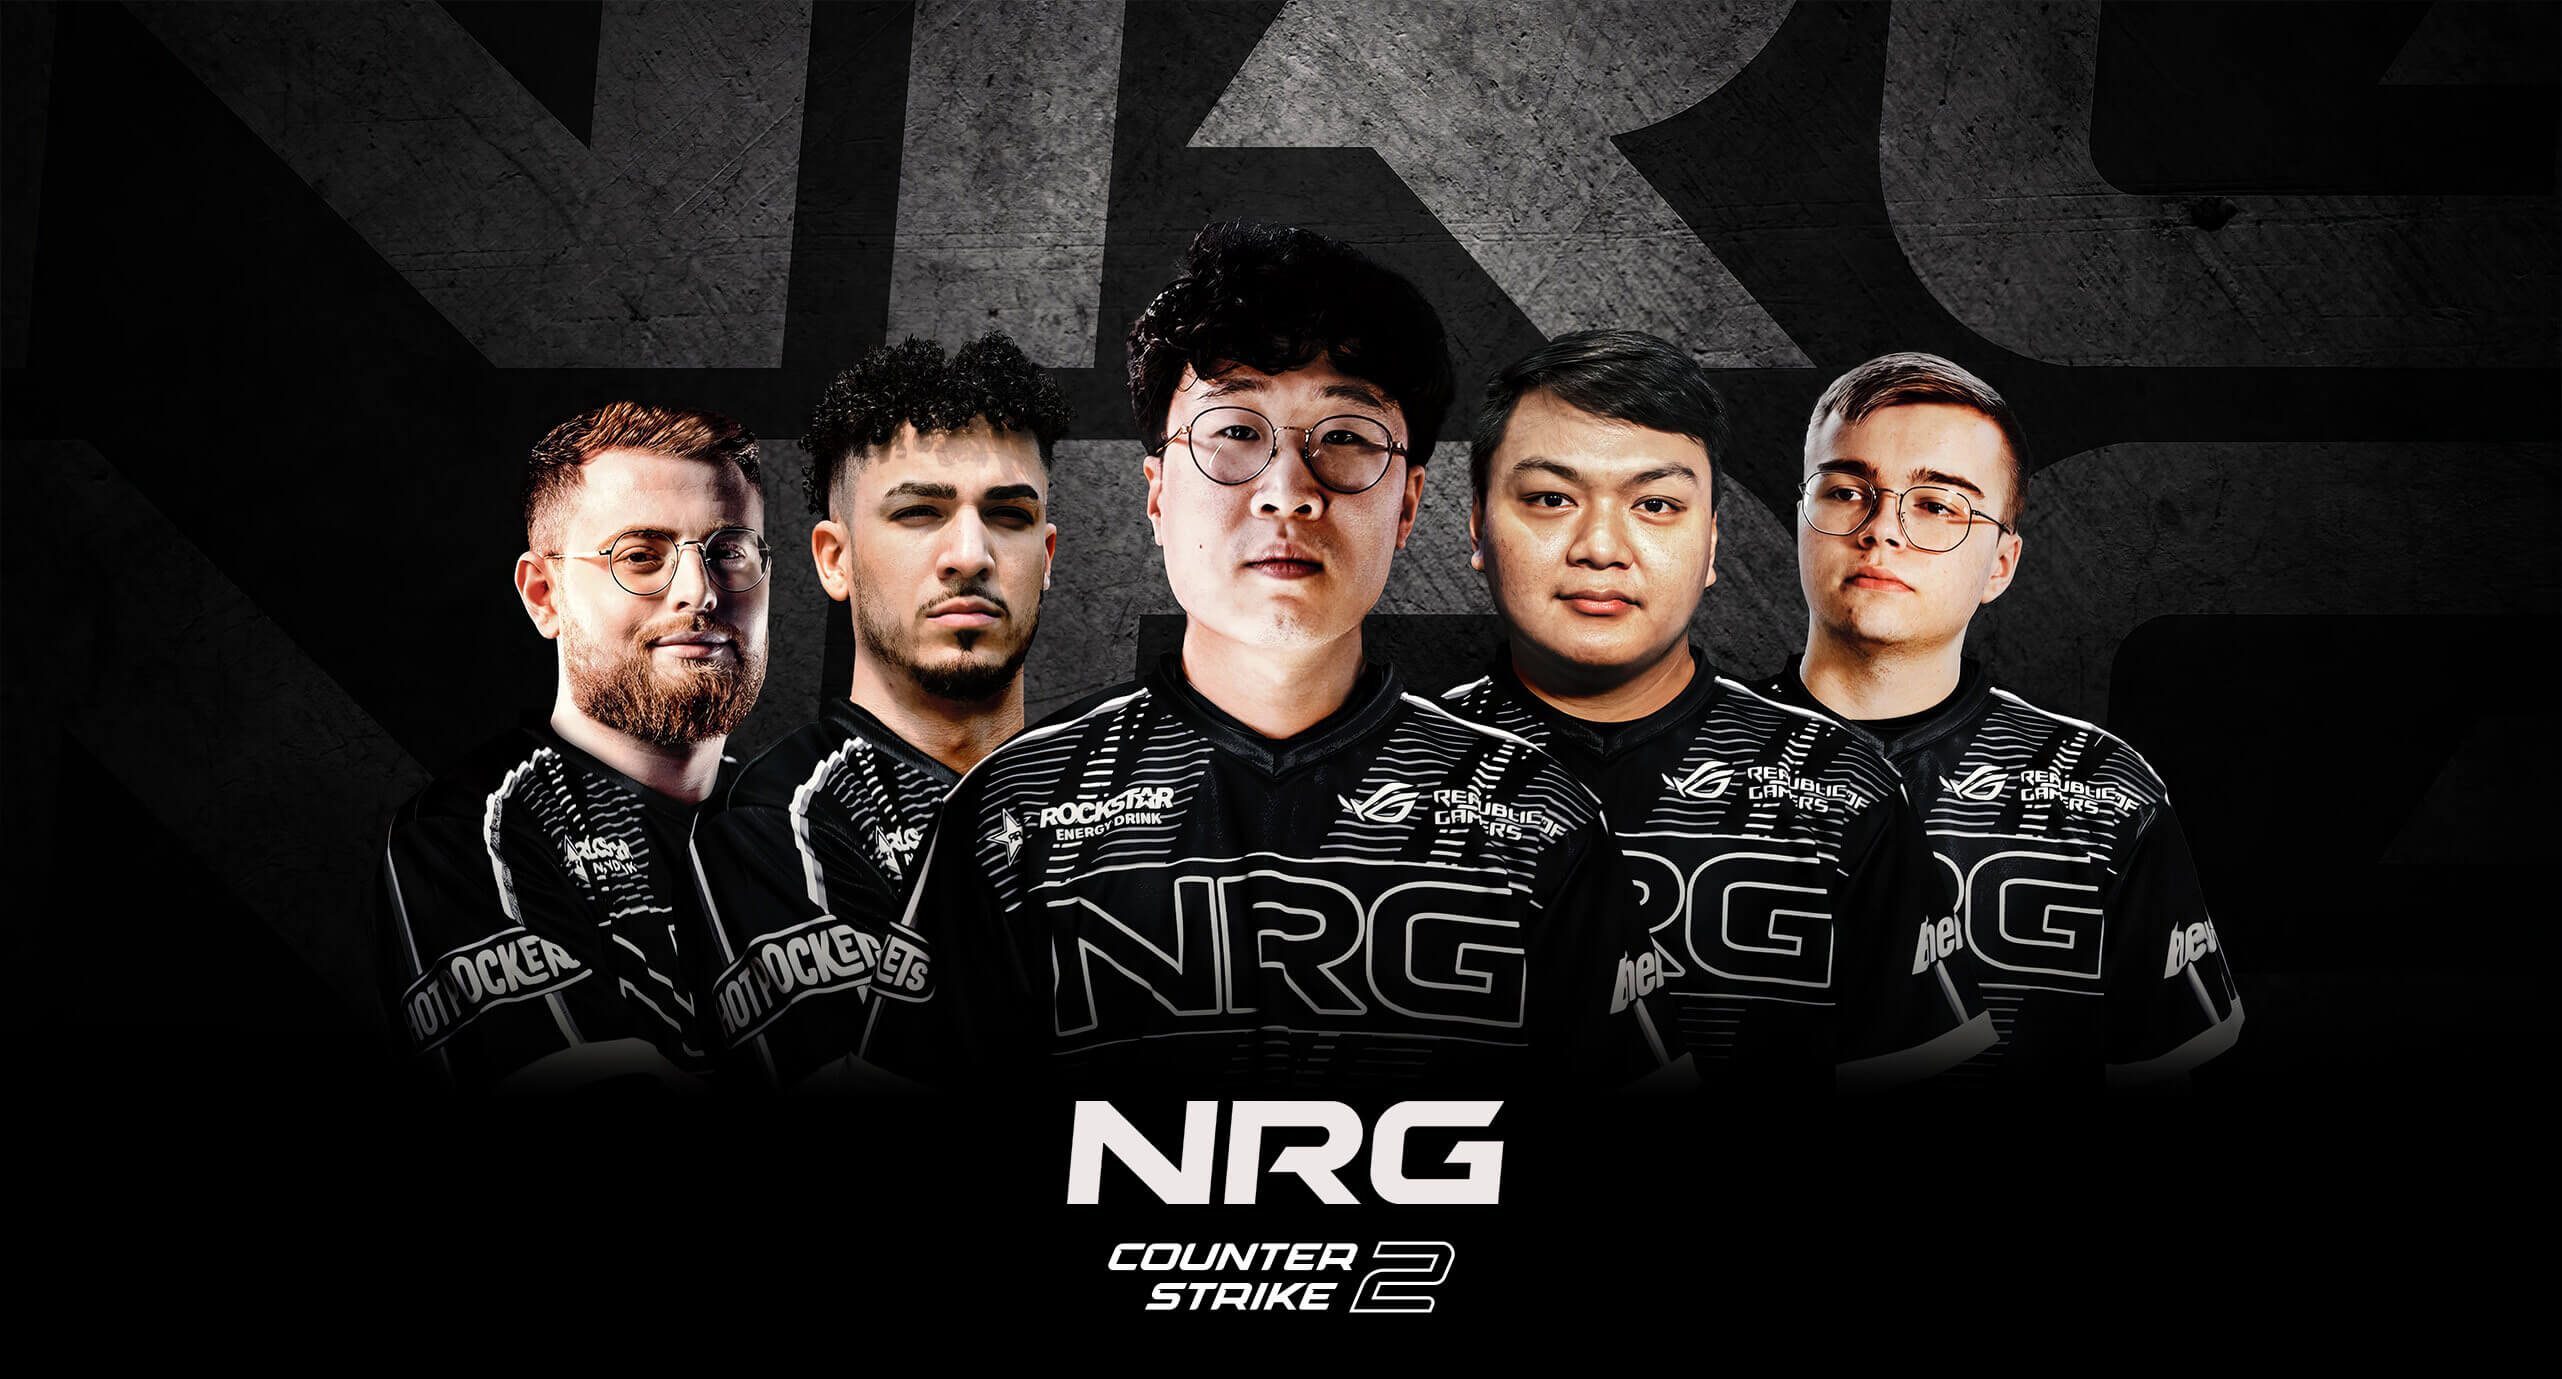 NRG Counter Strike 2 Team